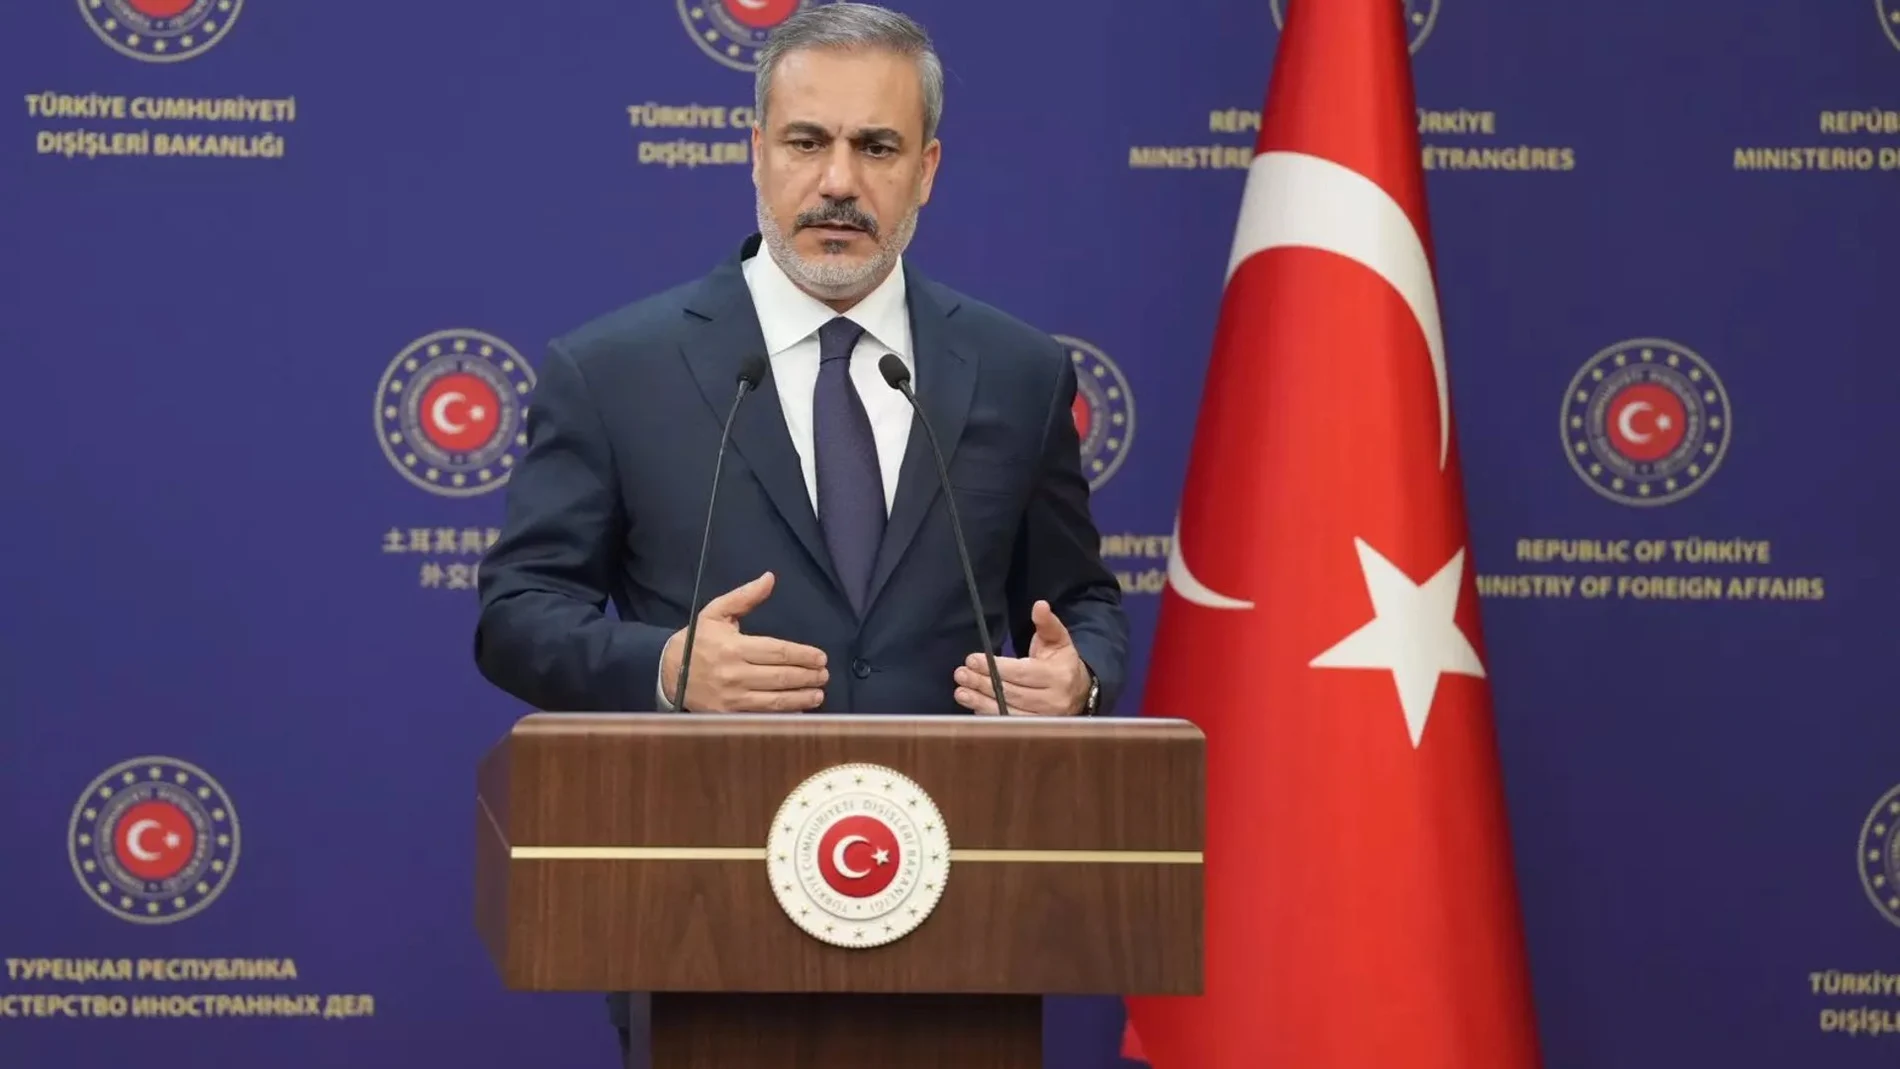 O.Próximo.- Turquía intervendrá en el caso abierto ante la CIJ contra Israel por riesgo de genocidio en Gaza